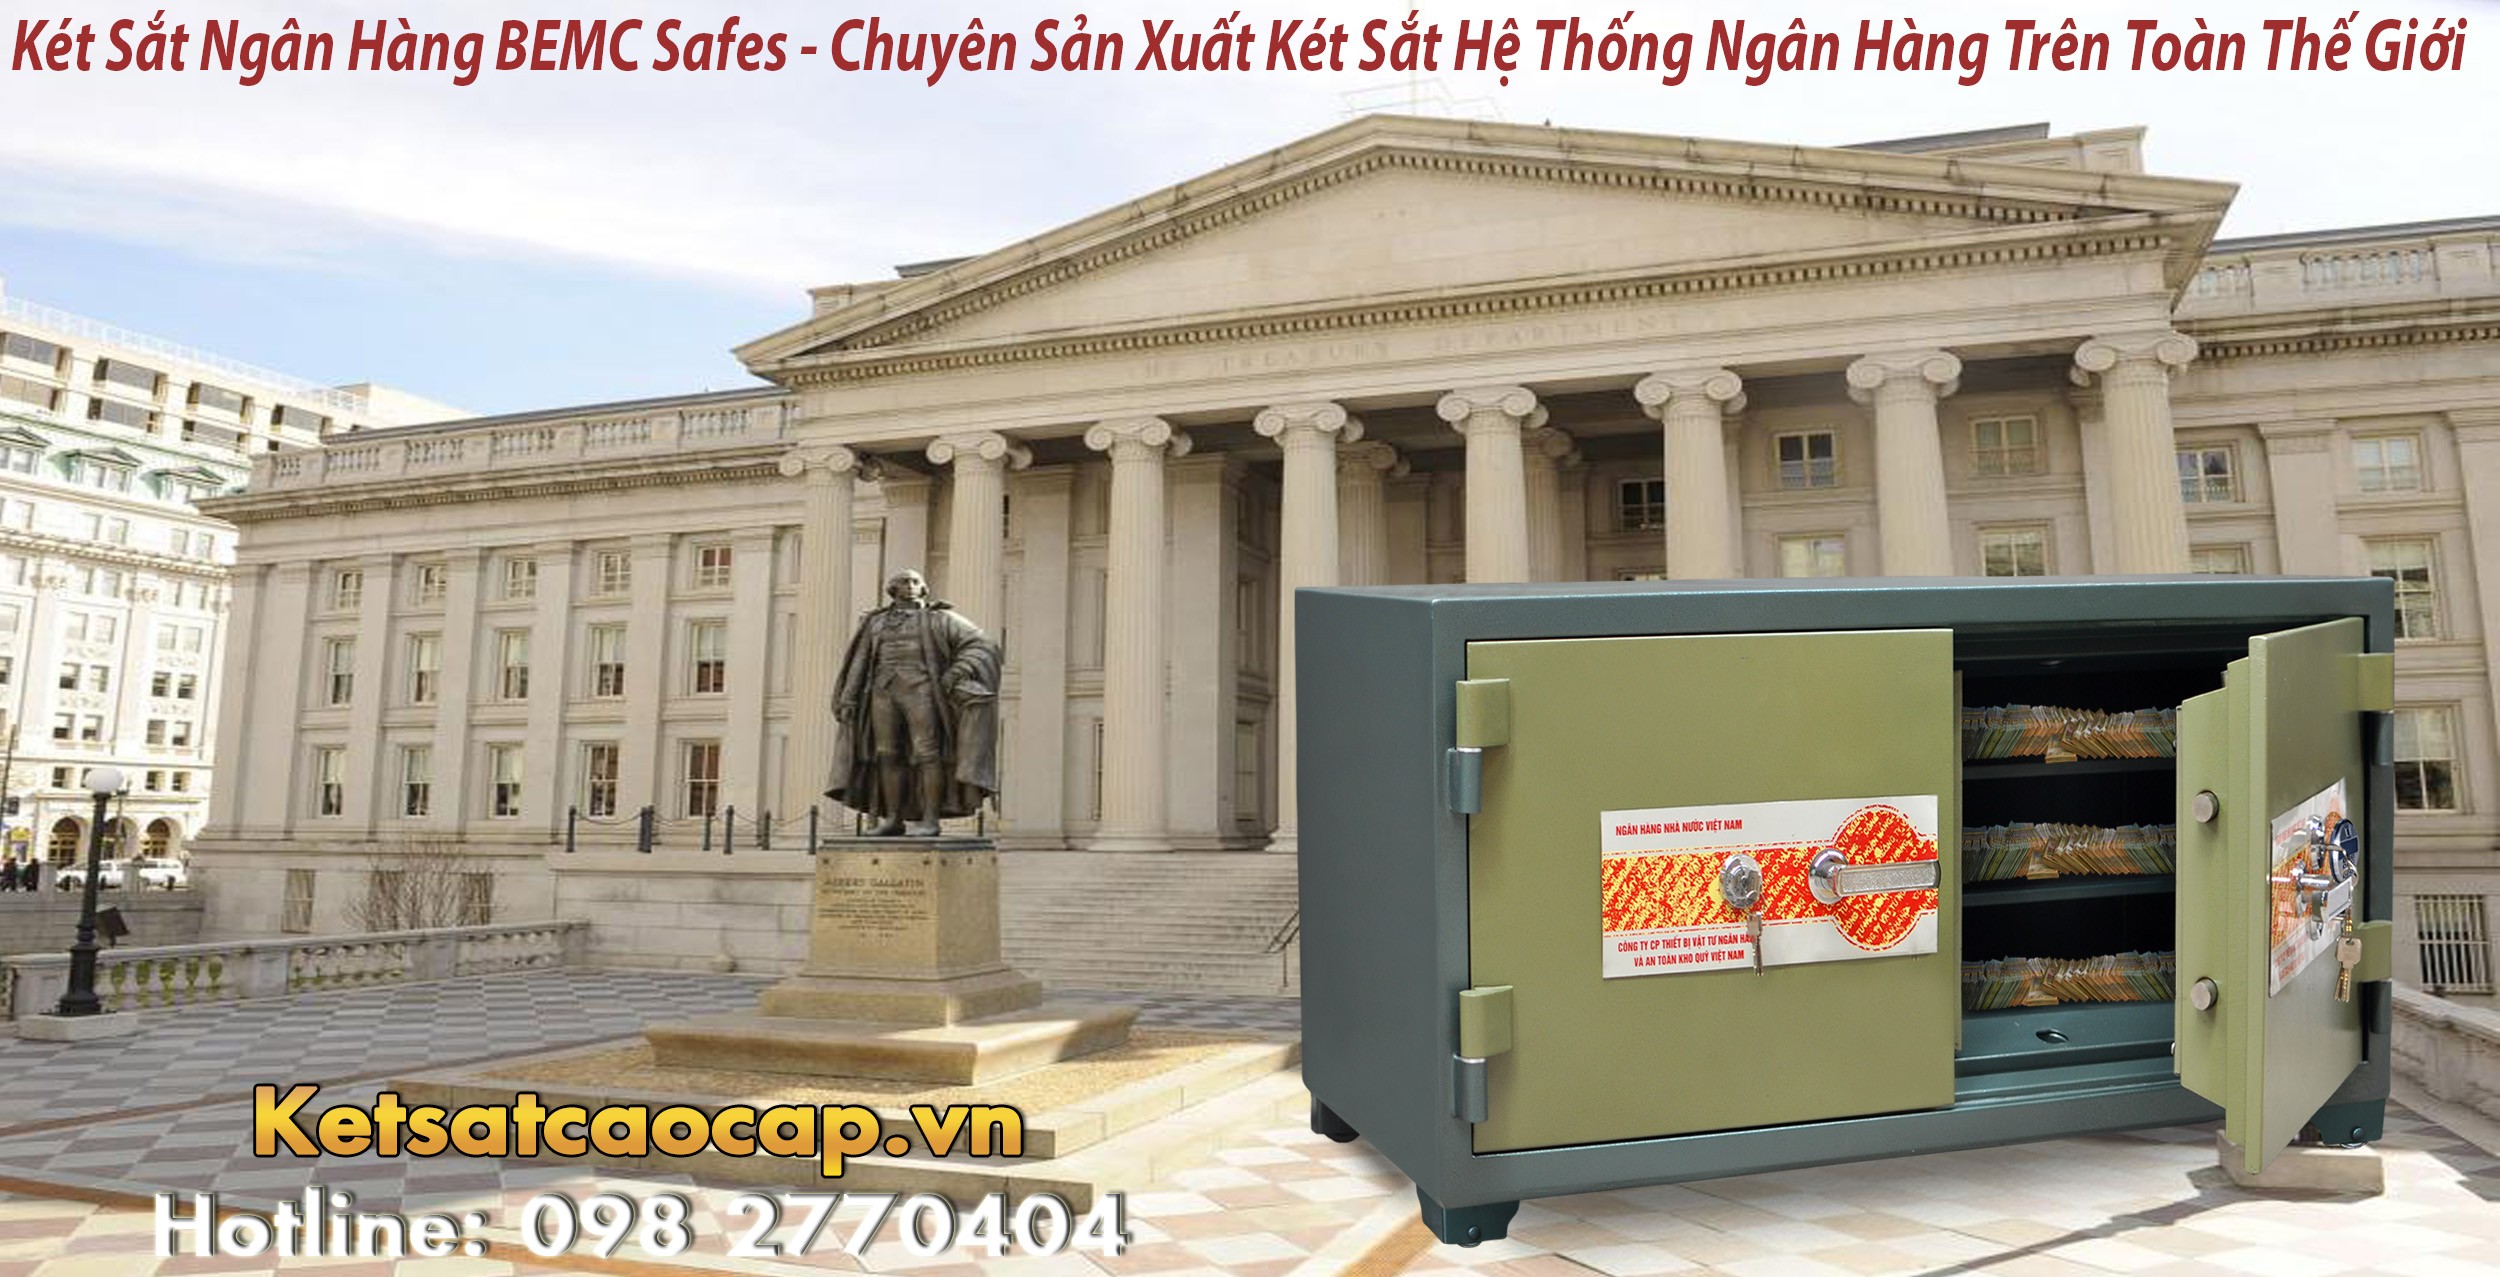 hình ảnh sản phẩm mua két sắt vân tay nhập khẩu Khánh Hoà